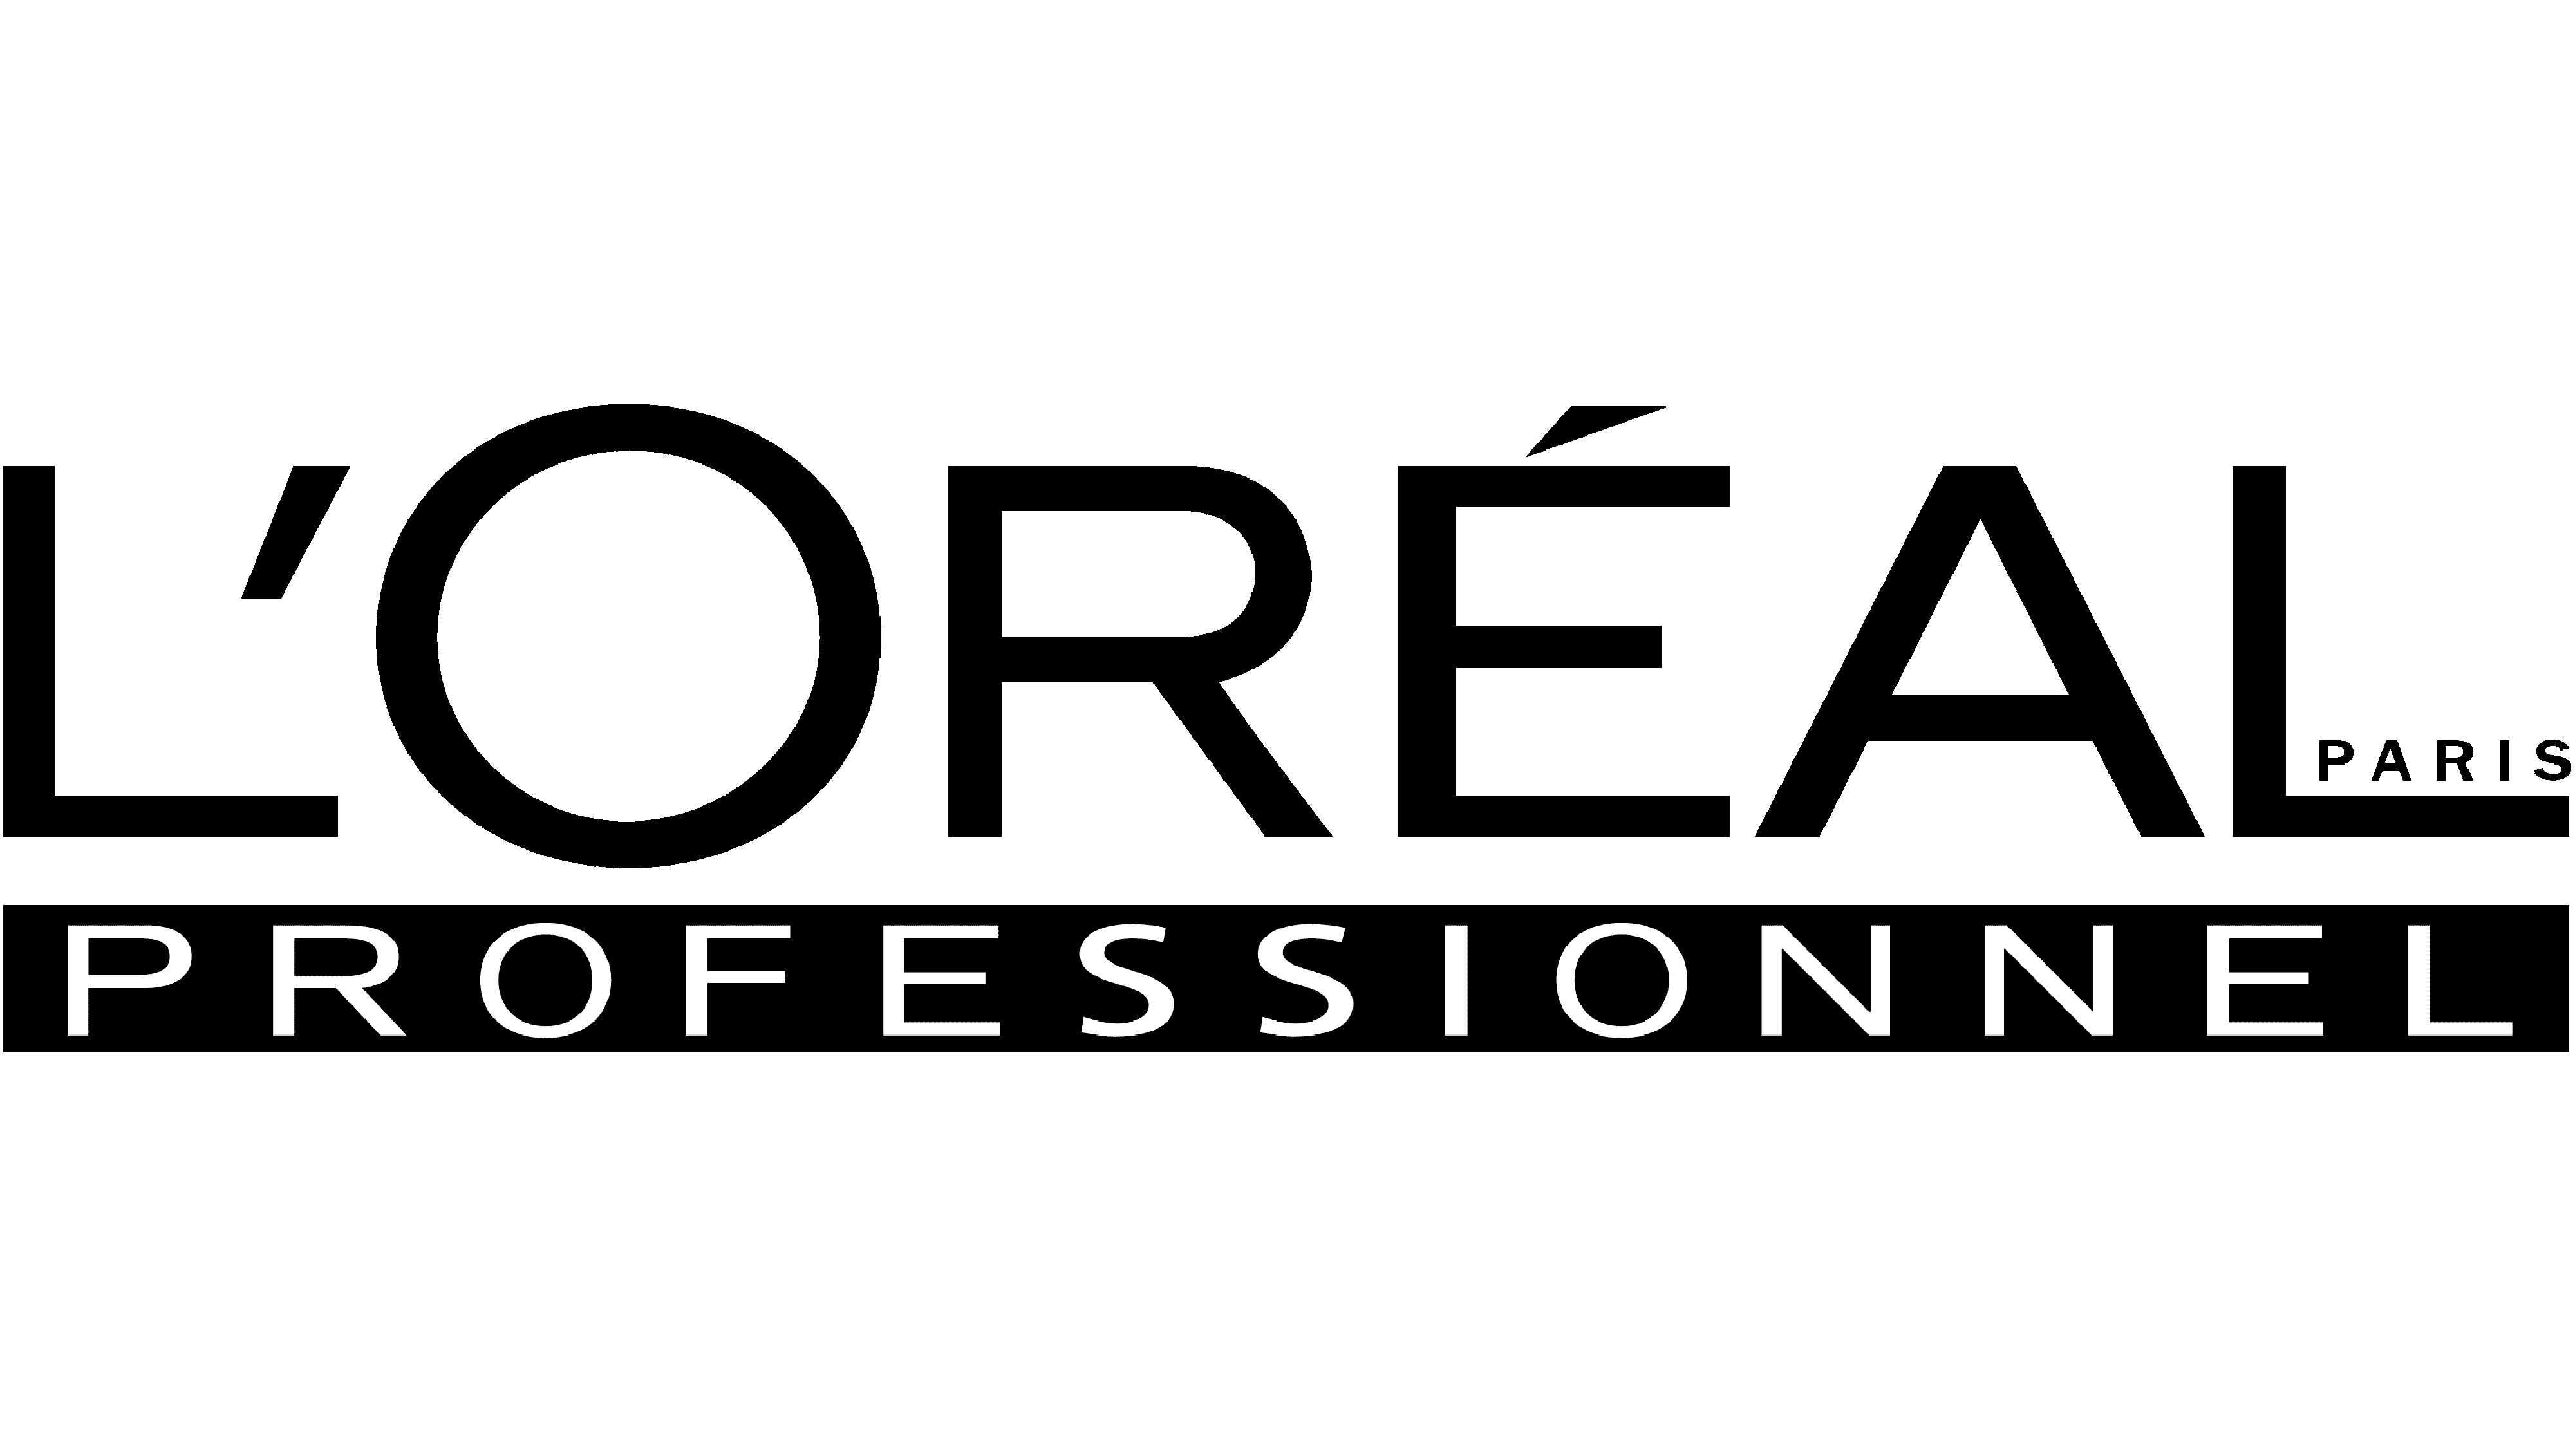 L'Oréal Professionnel